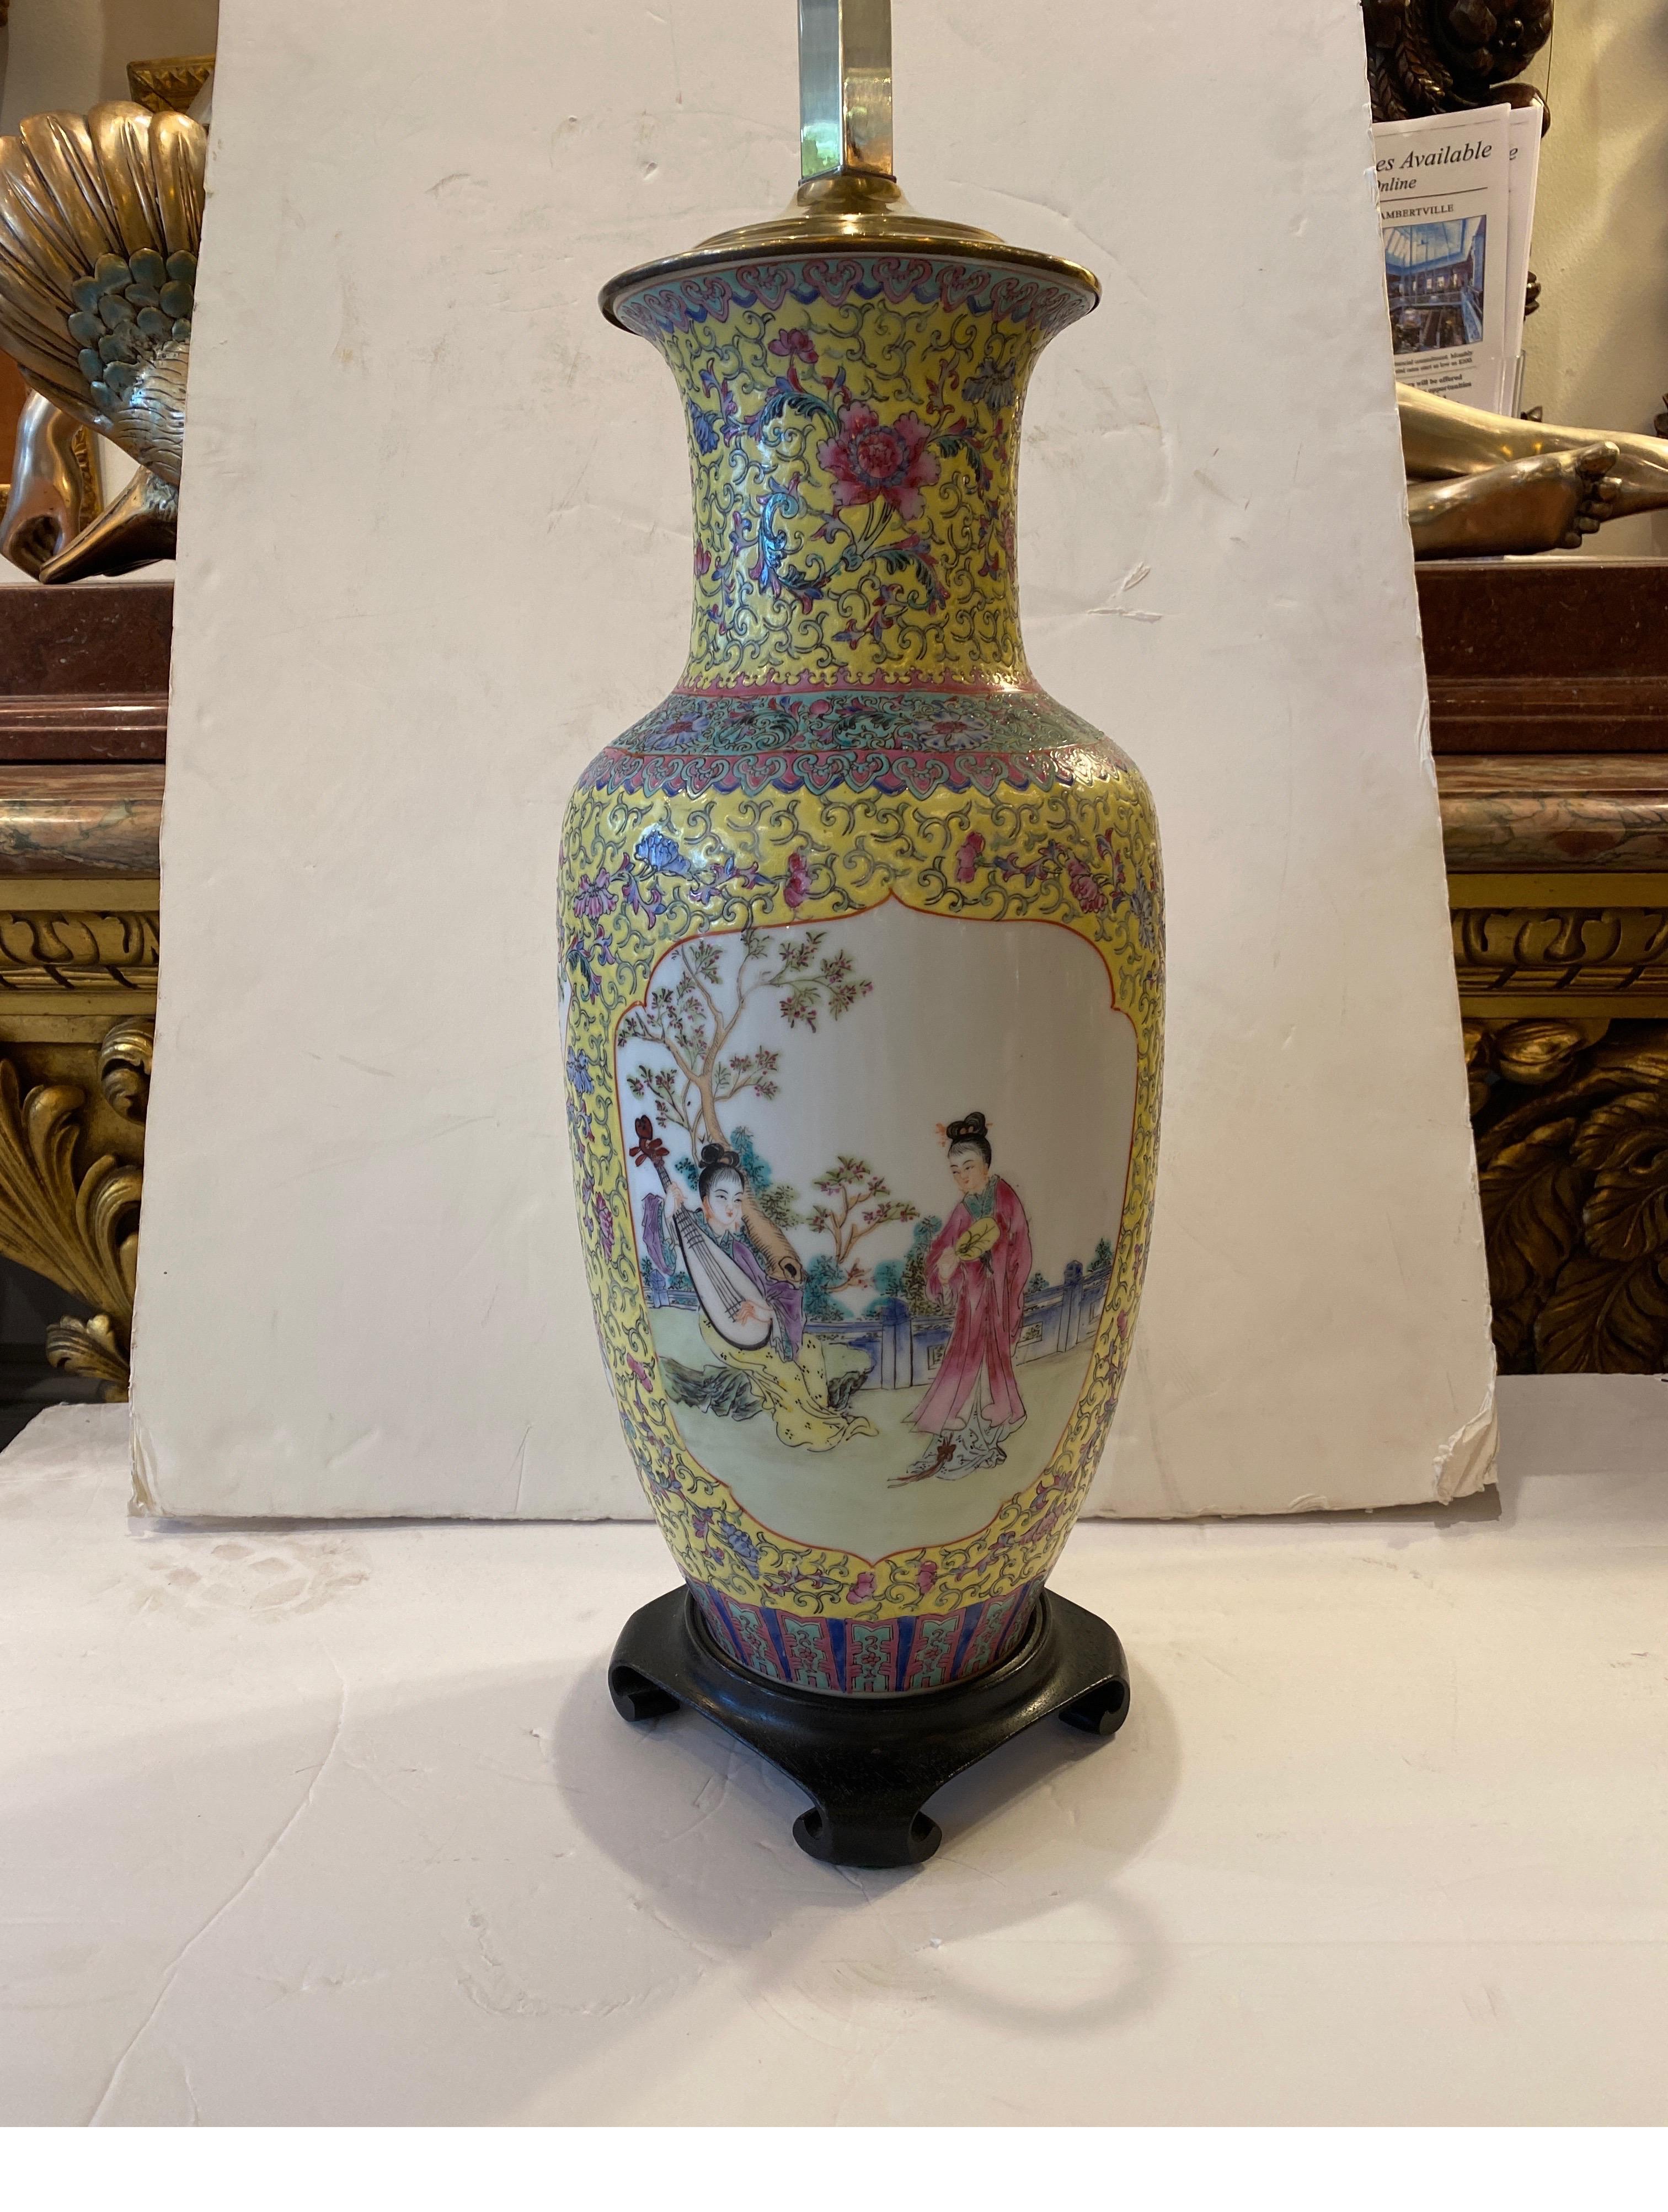 Eine handbemalte chinesische Porzellanlampe mit kaisergelbem Hintergrund. Das weiße Porzellan mit Kartuschen von aristokratischen Frauen in einem floralen Hintergrund mit aufwändigem All-Over-Dekor in gelb, rosa, blau und aqua... Die